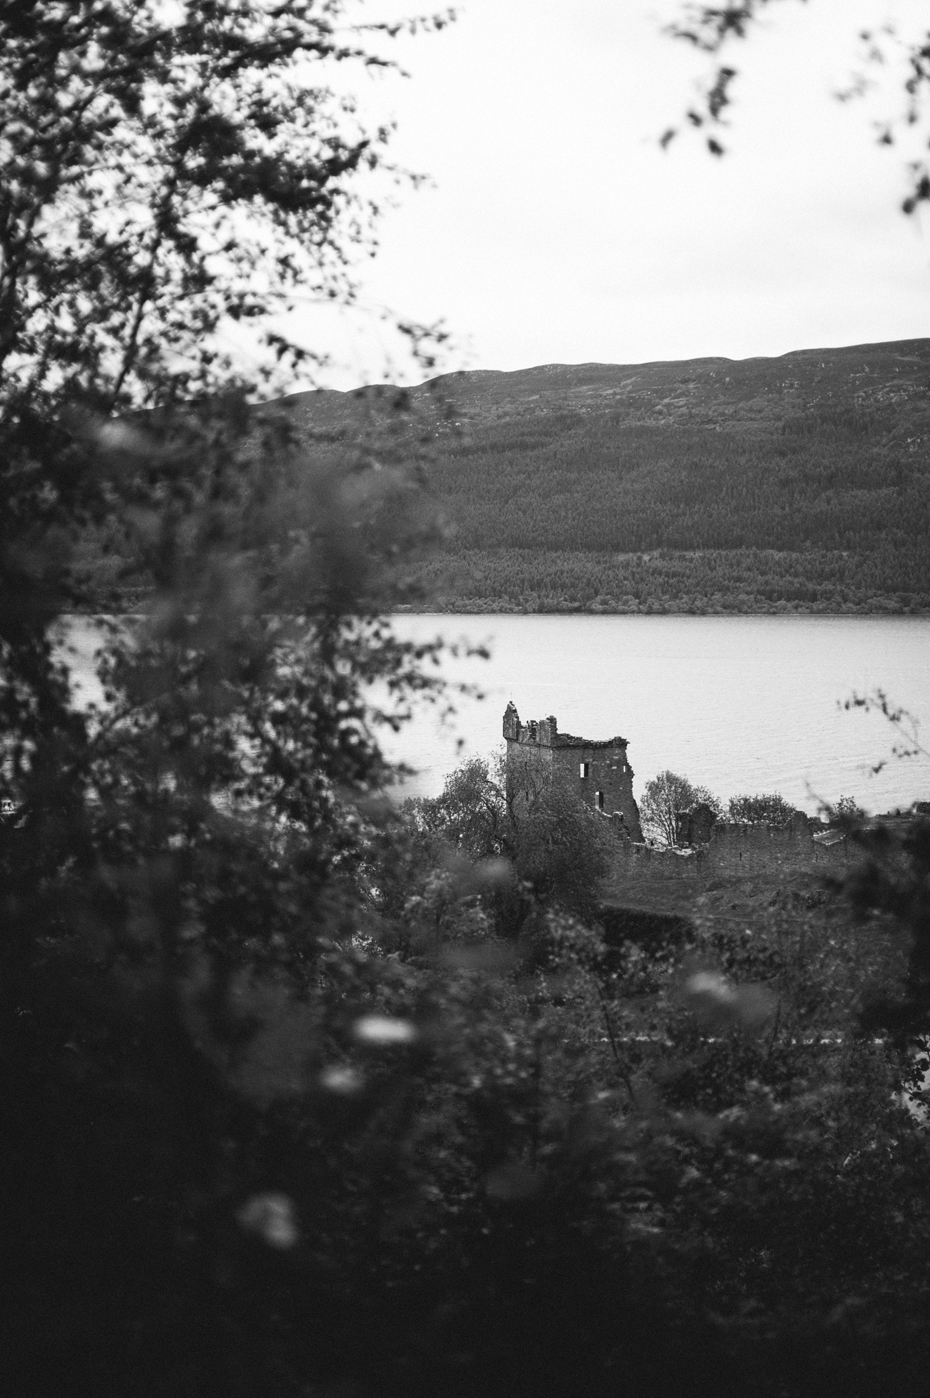 Isle of Skye Scotland Wedding Photographer